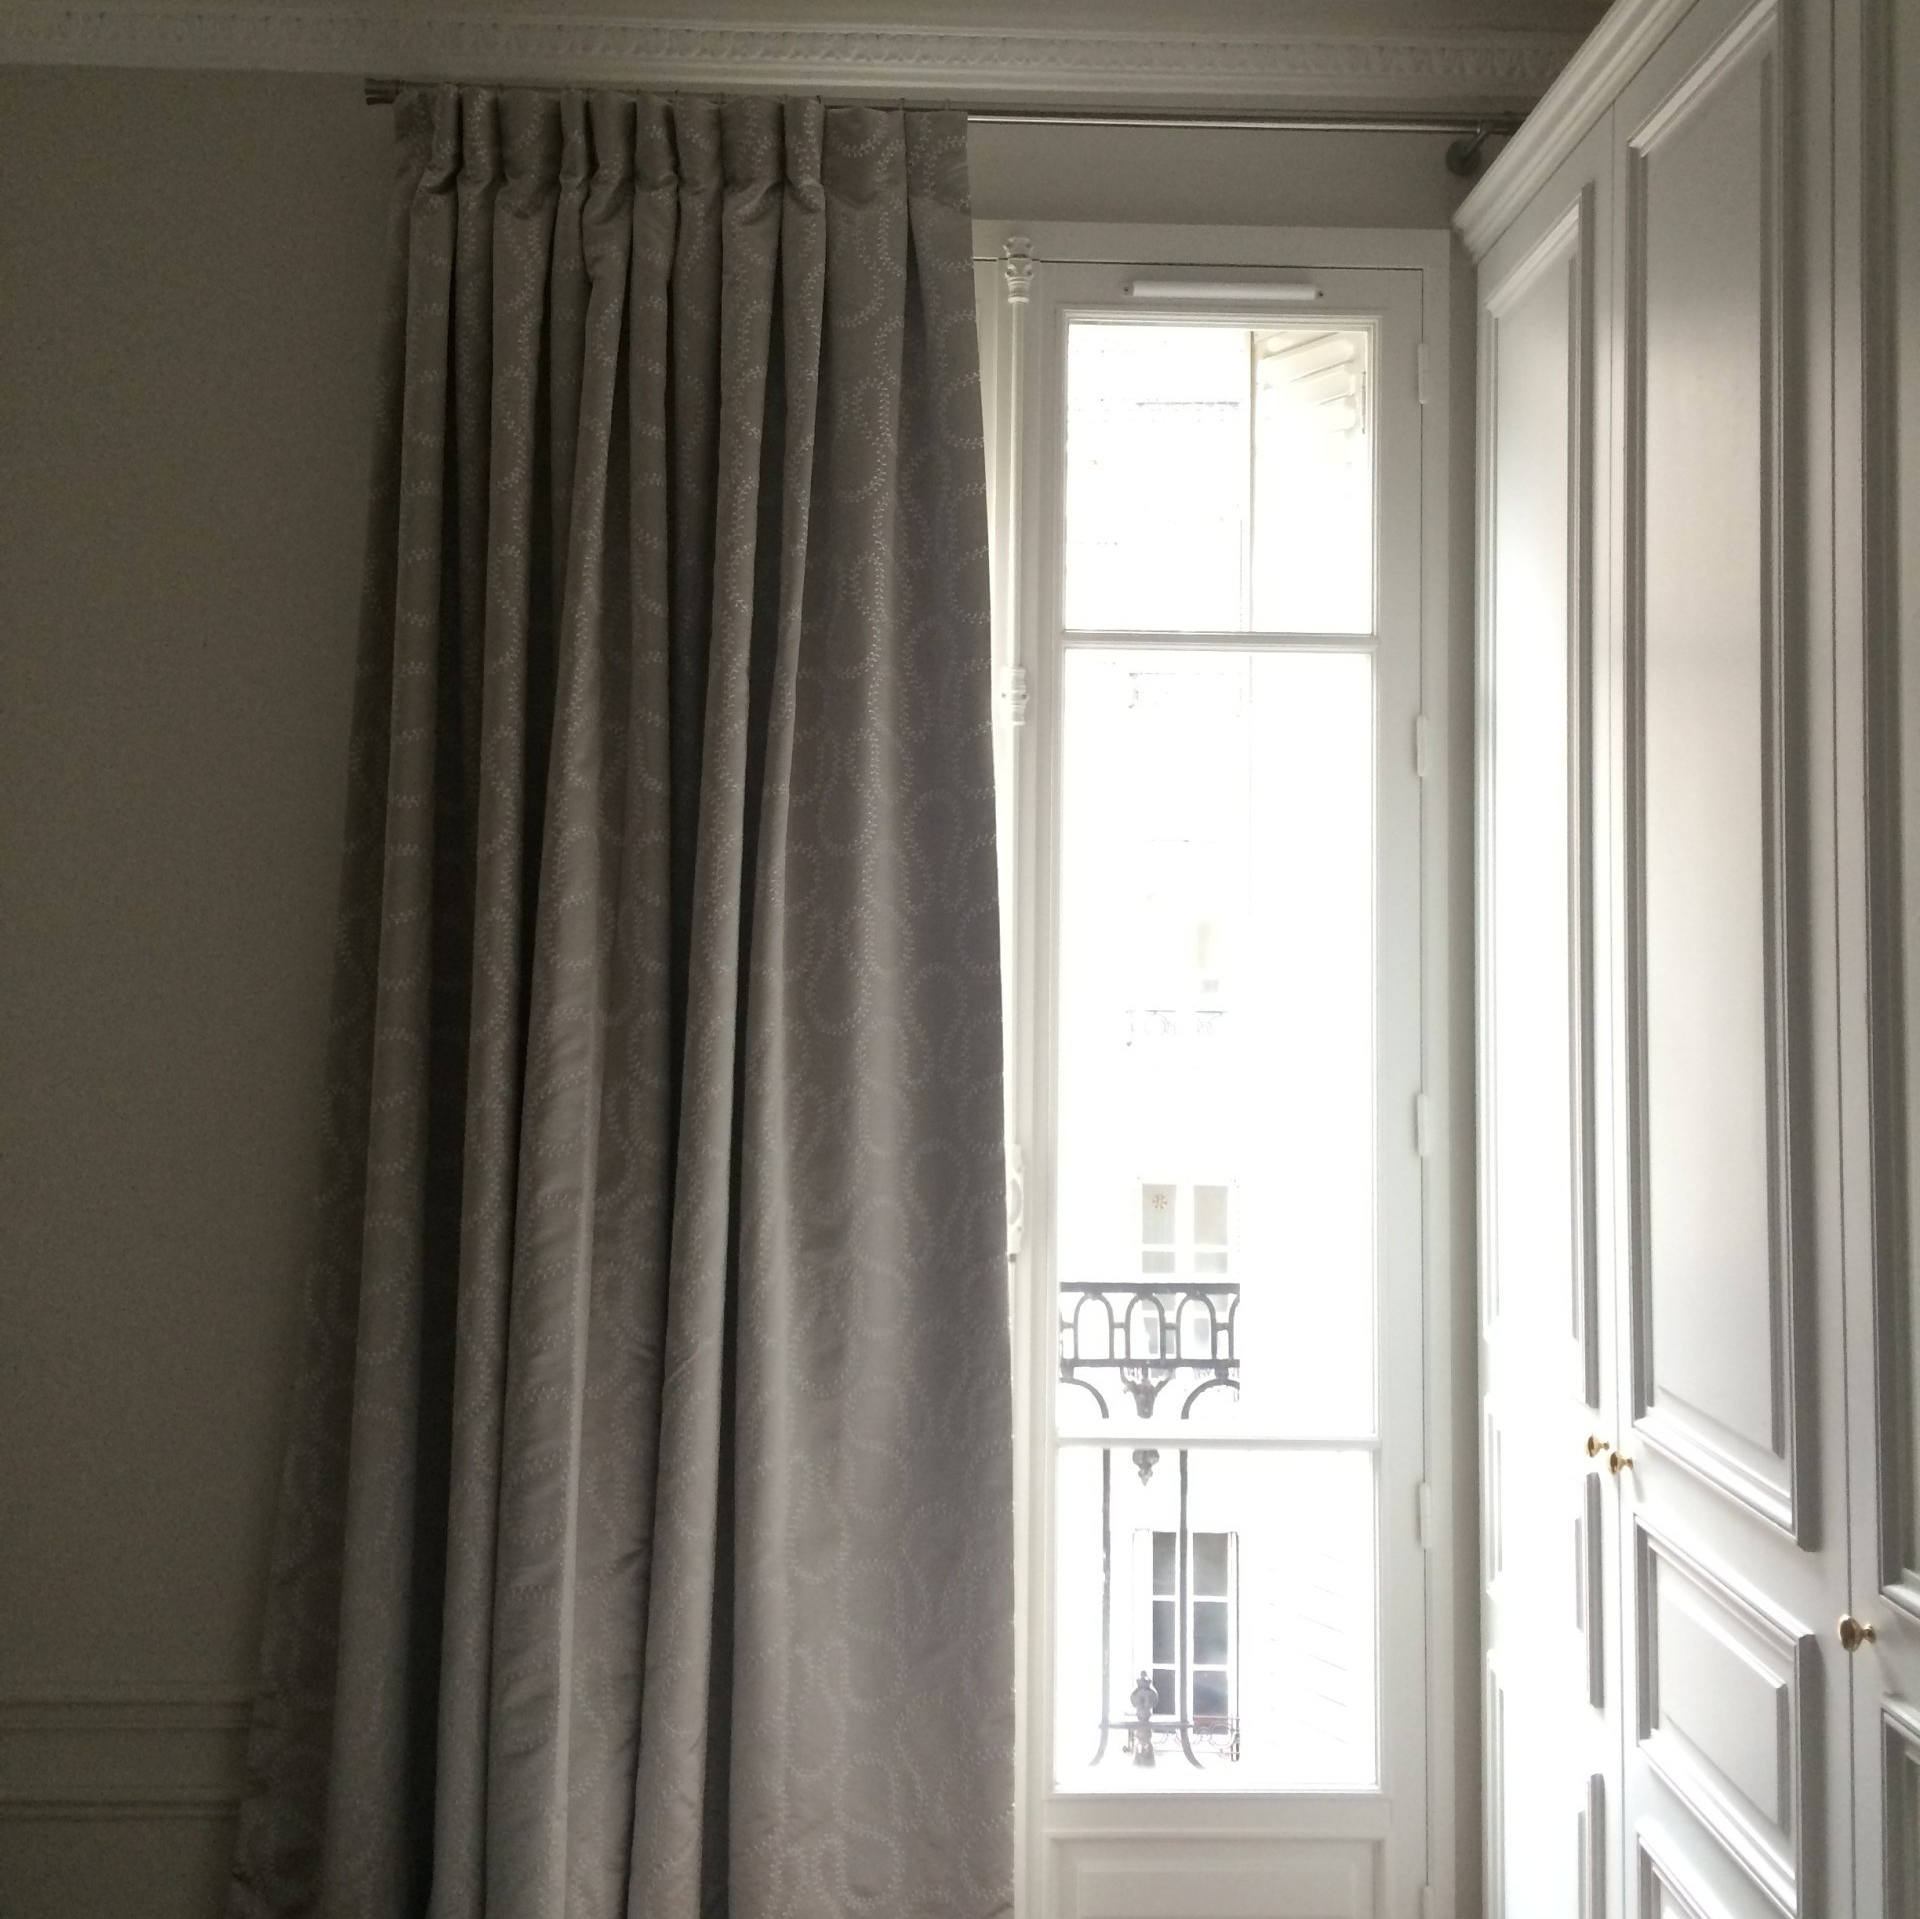 Grand rideau gris clair